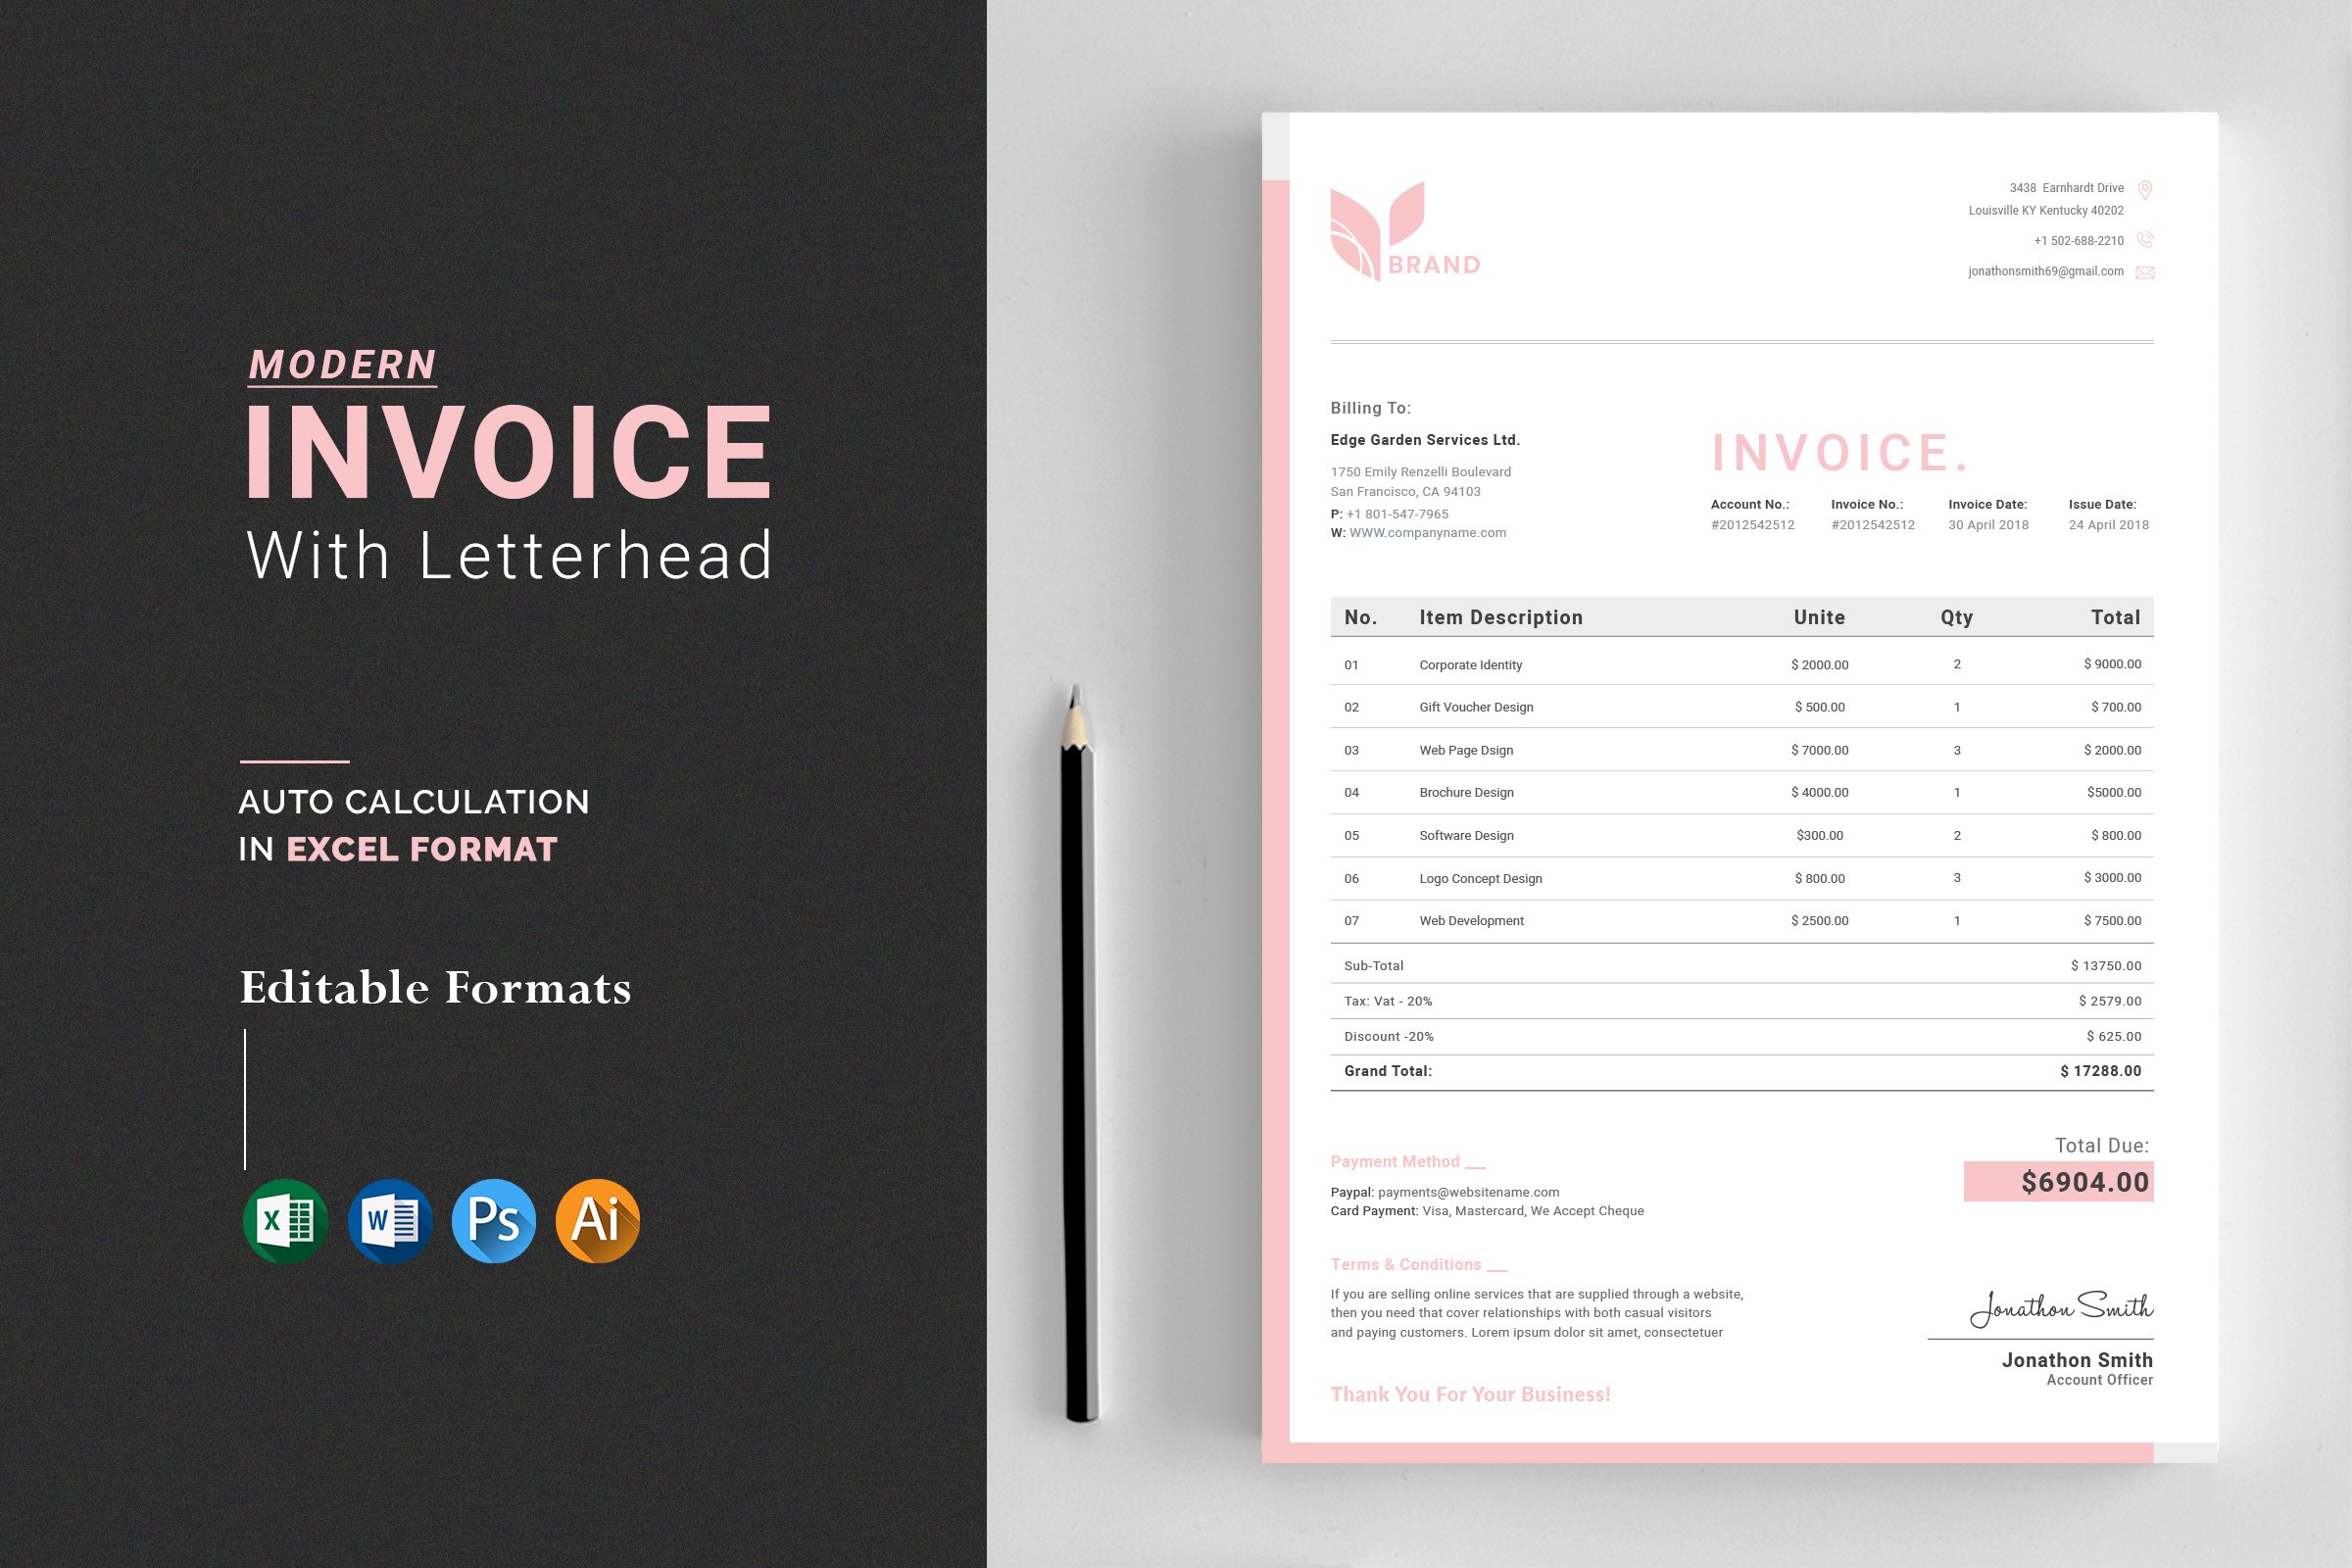 Invoice + Letterhead cover image.